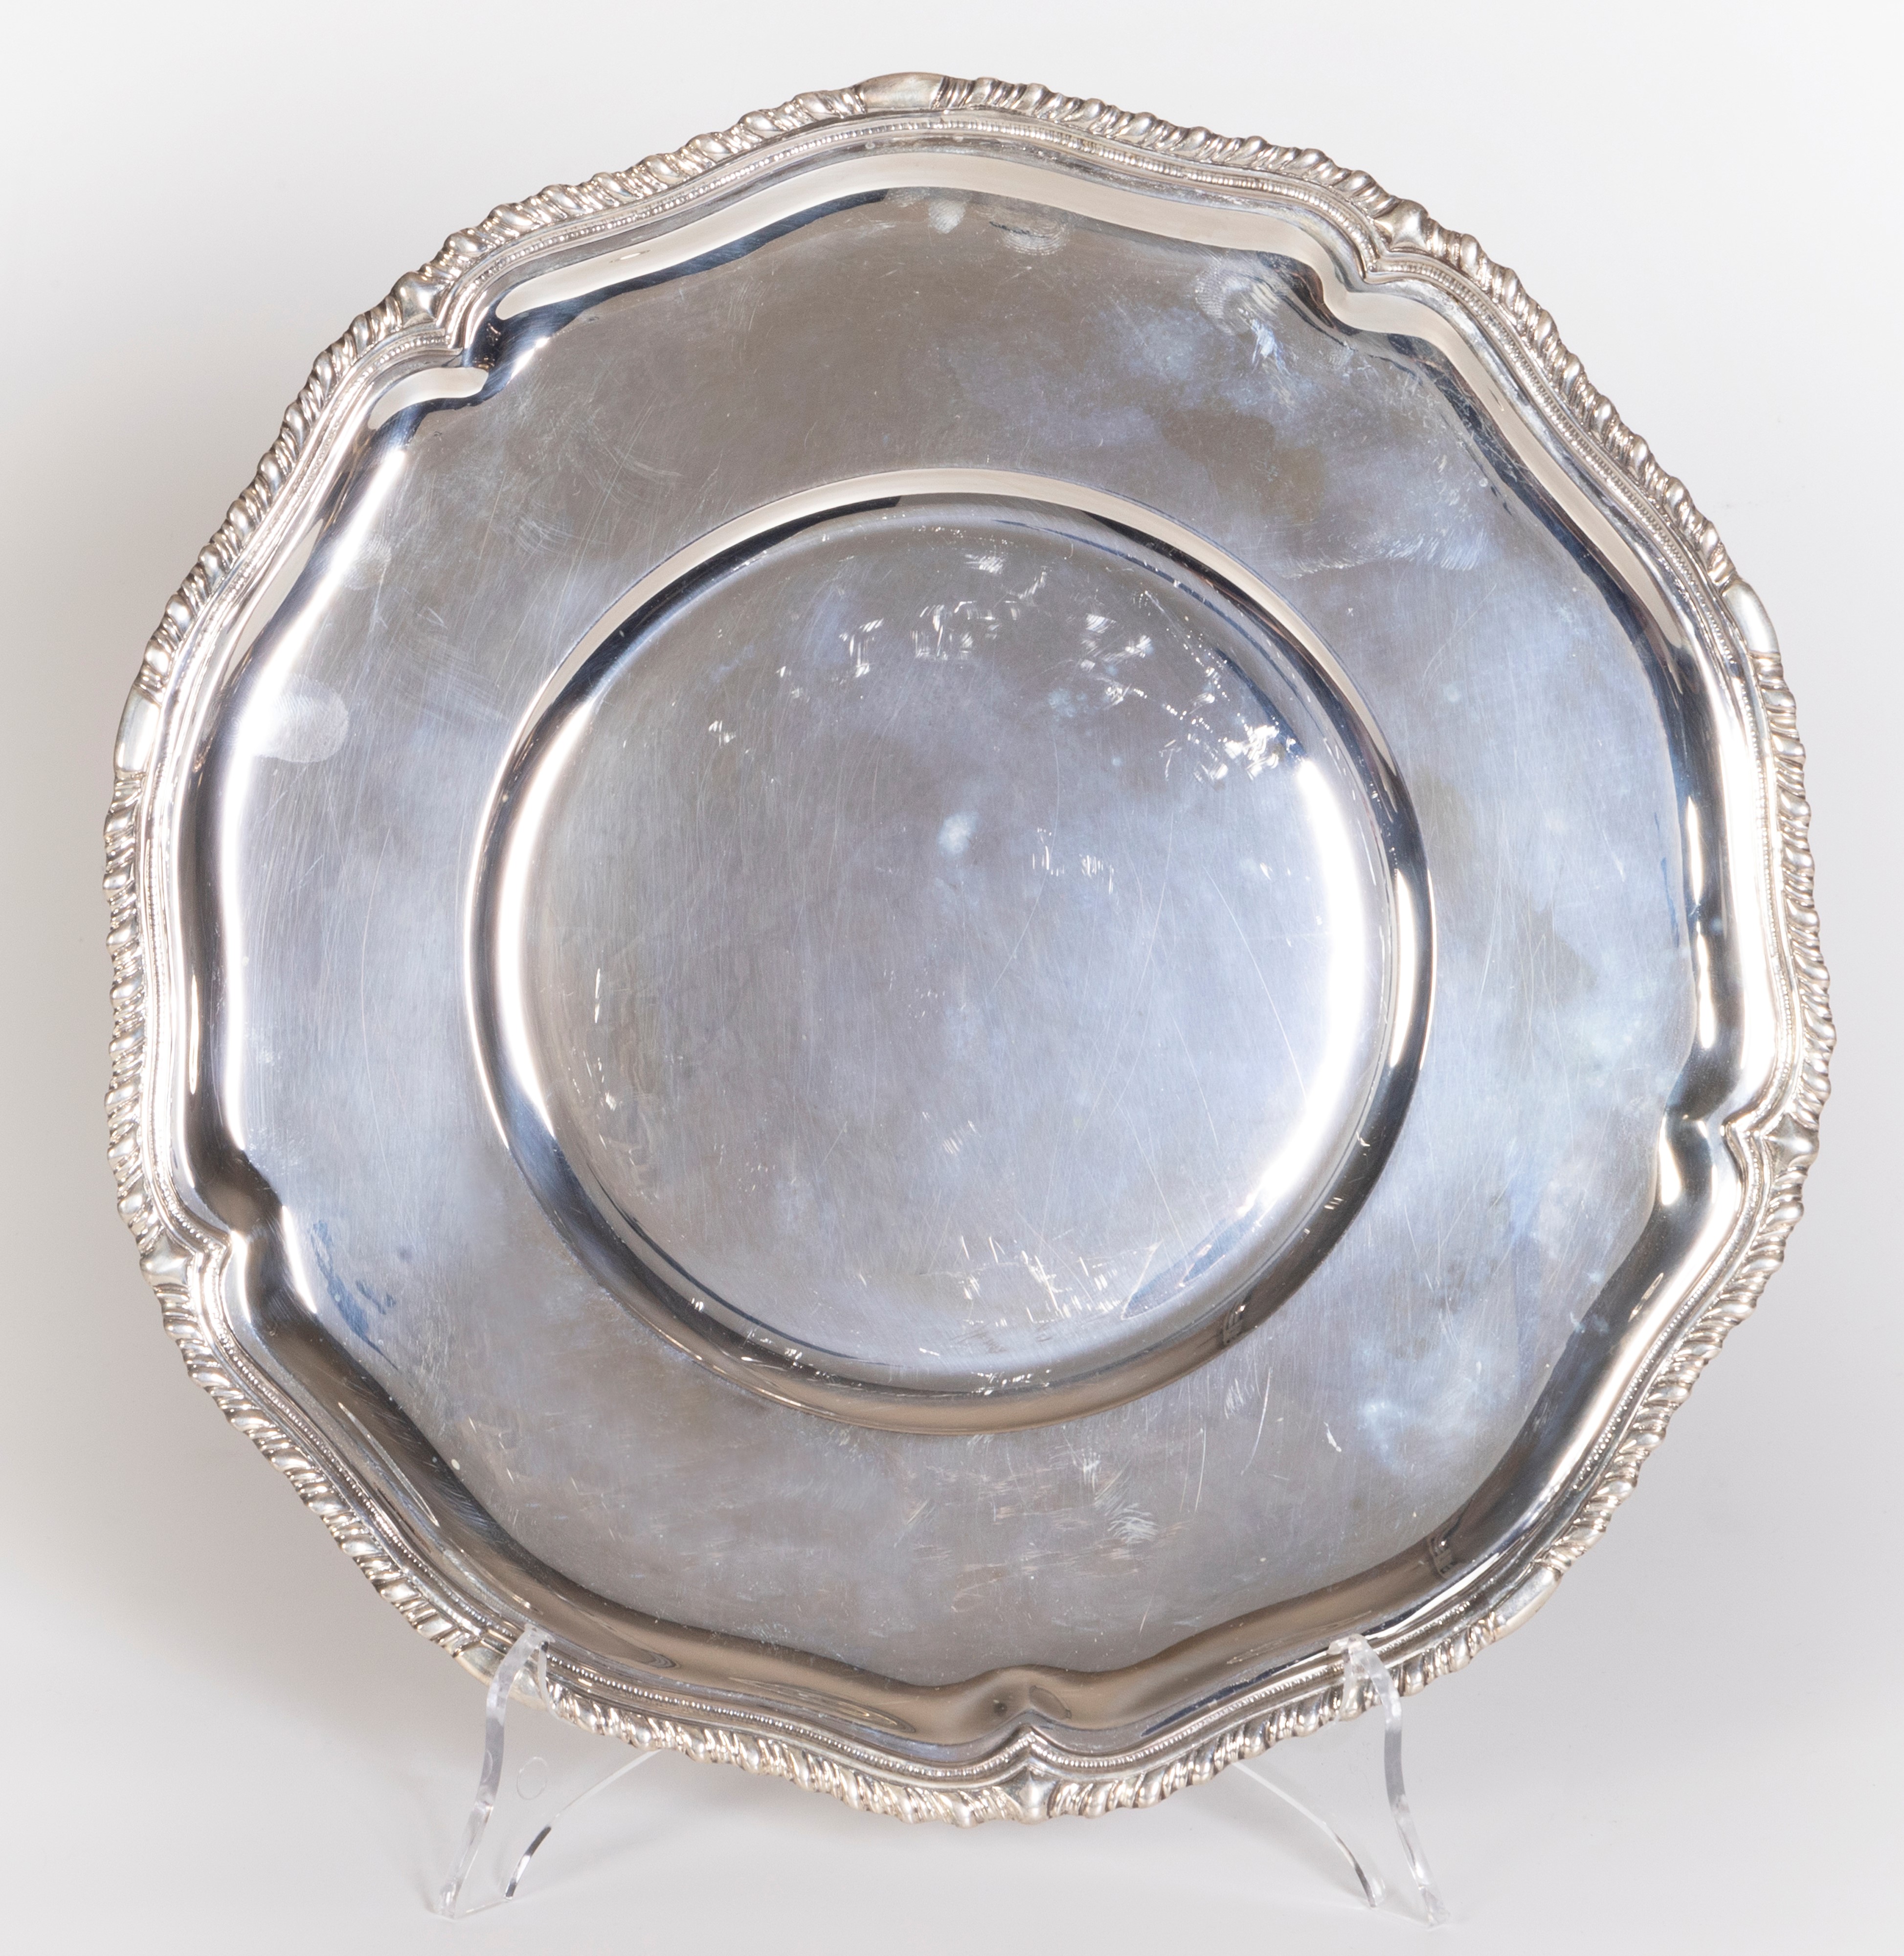 Diciotto sottopiatti in argento - Auction The Art of the Table - Casa  d'aste Farsettiarte